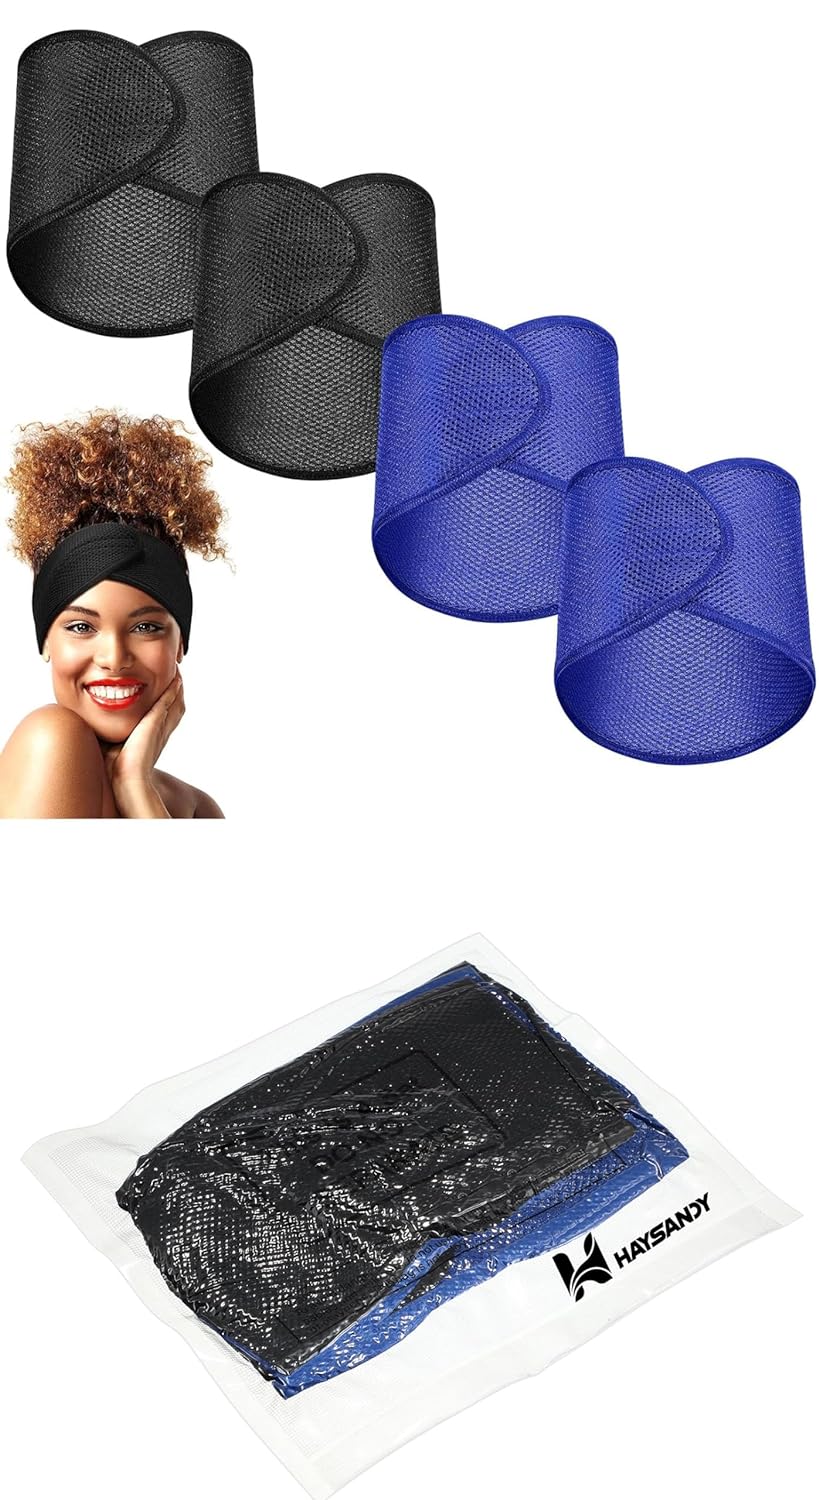 4 Pieces Mesh Hair Wraps for Black Women Sleeping Hair Wrap Scarf Cap Spa Headbands Hair Wraps Hair Nets for Women Black Natural Hair Wash Face Sleep (Black, Blue)